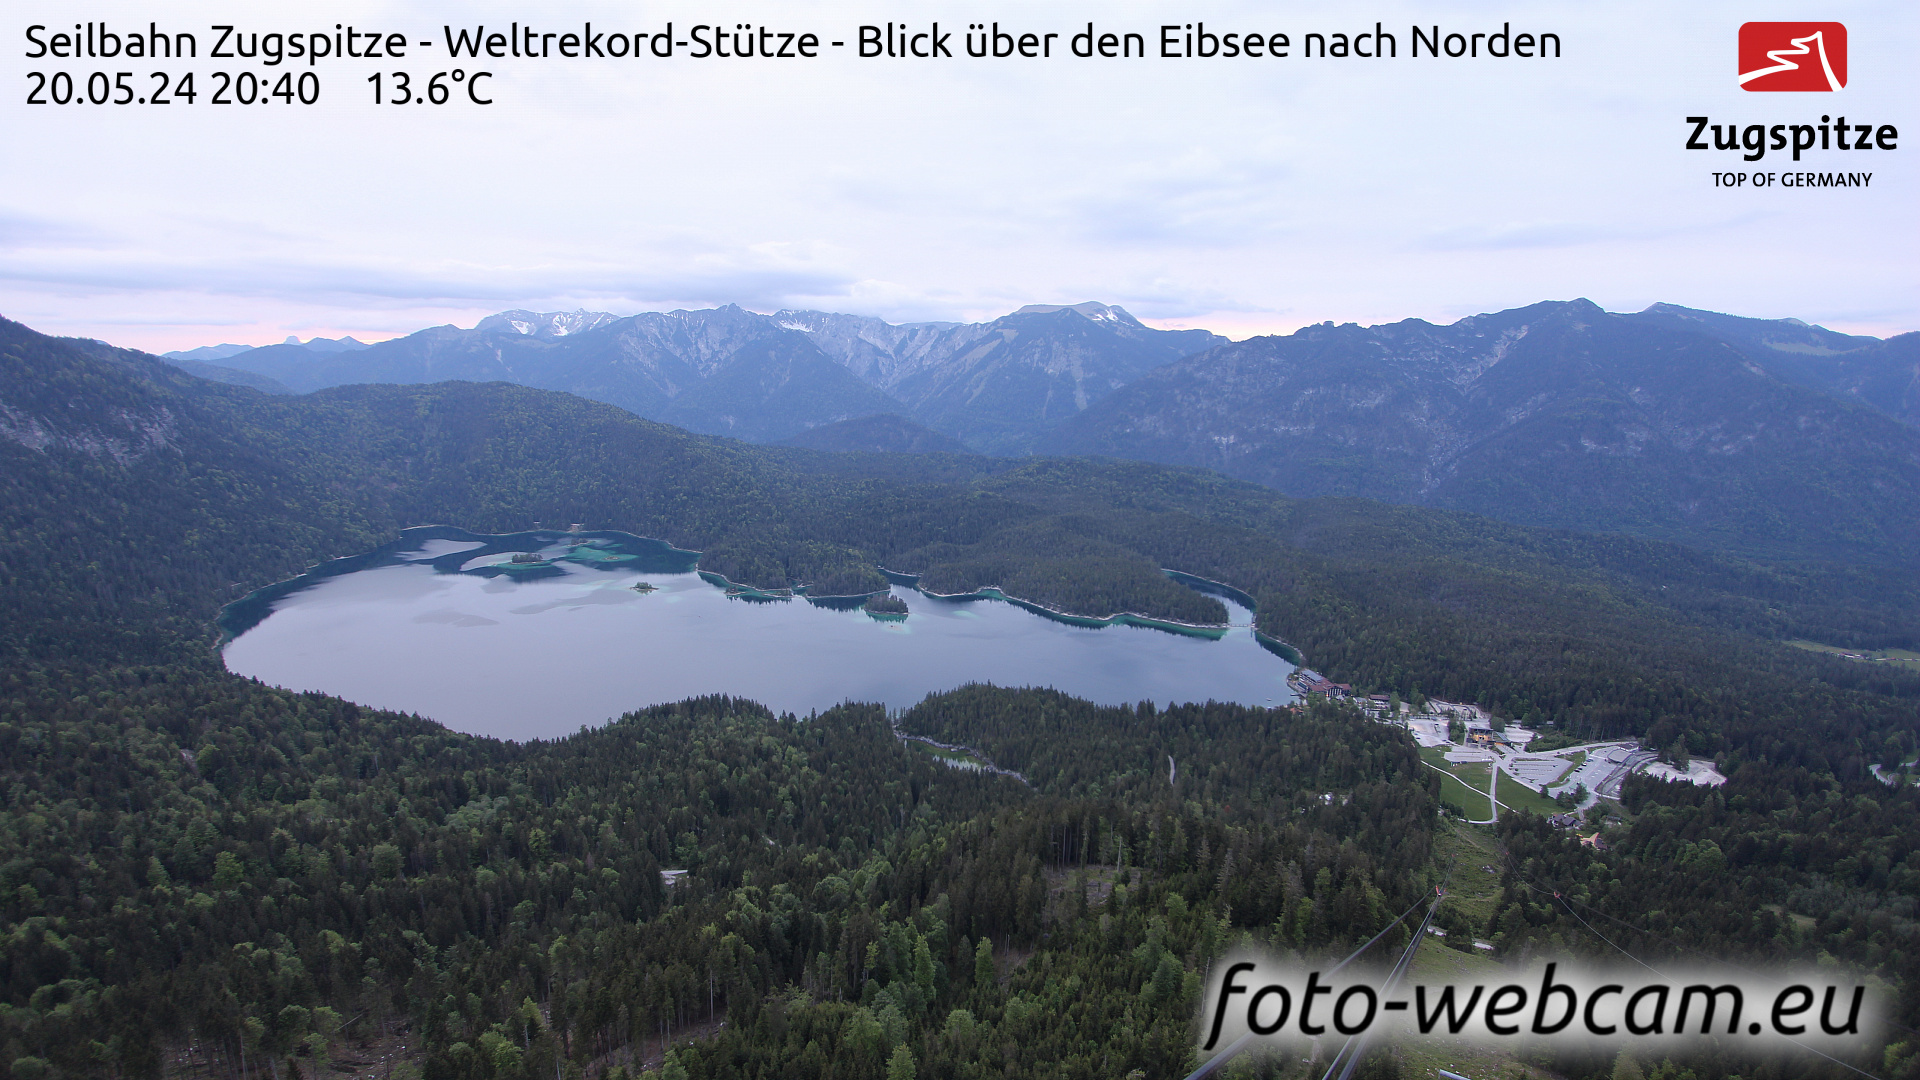 Zugspitze So. 20:49